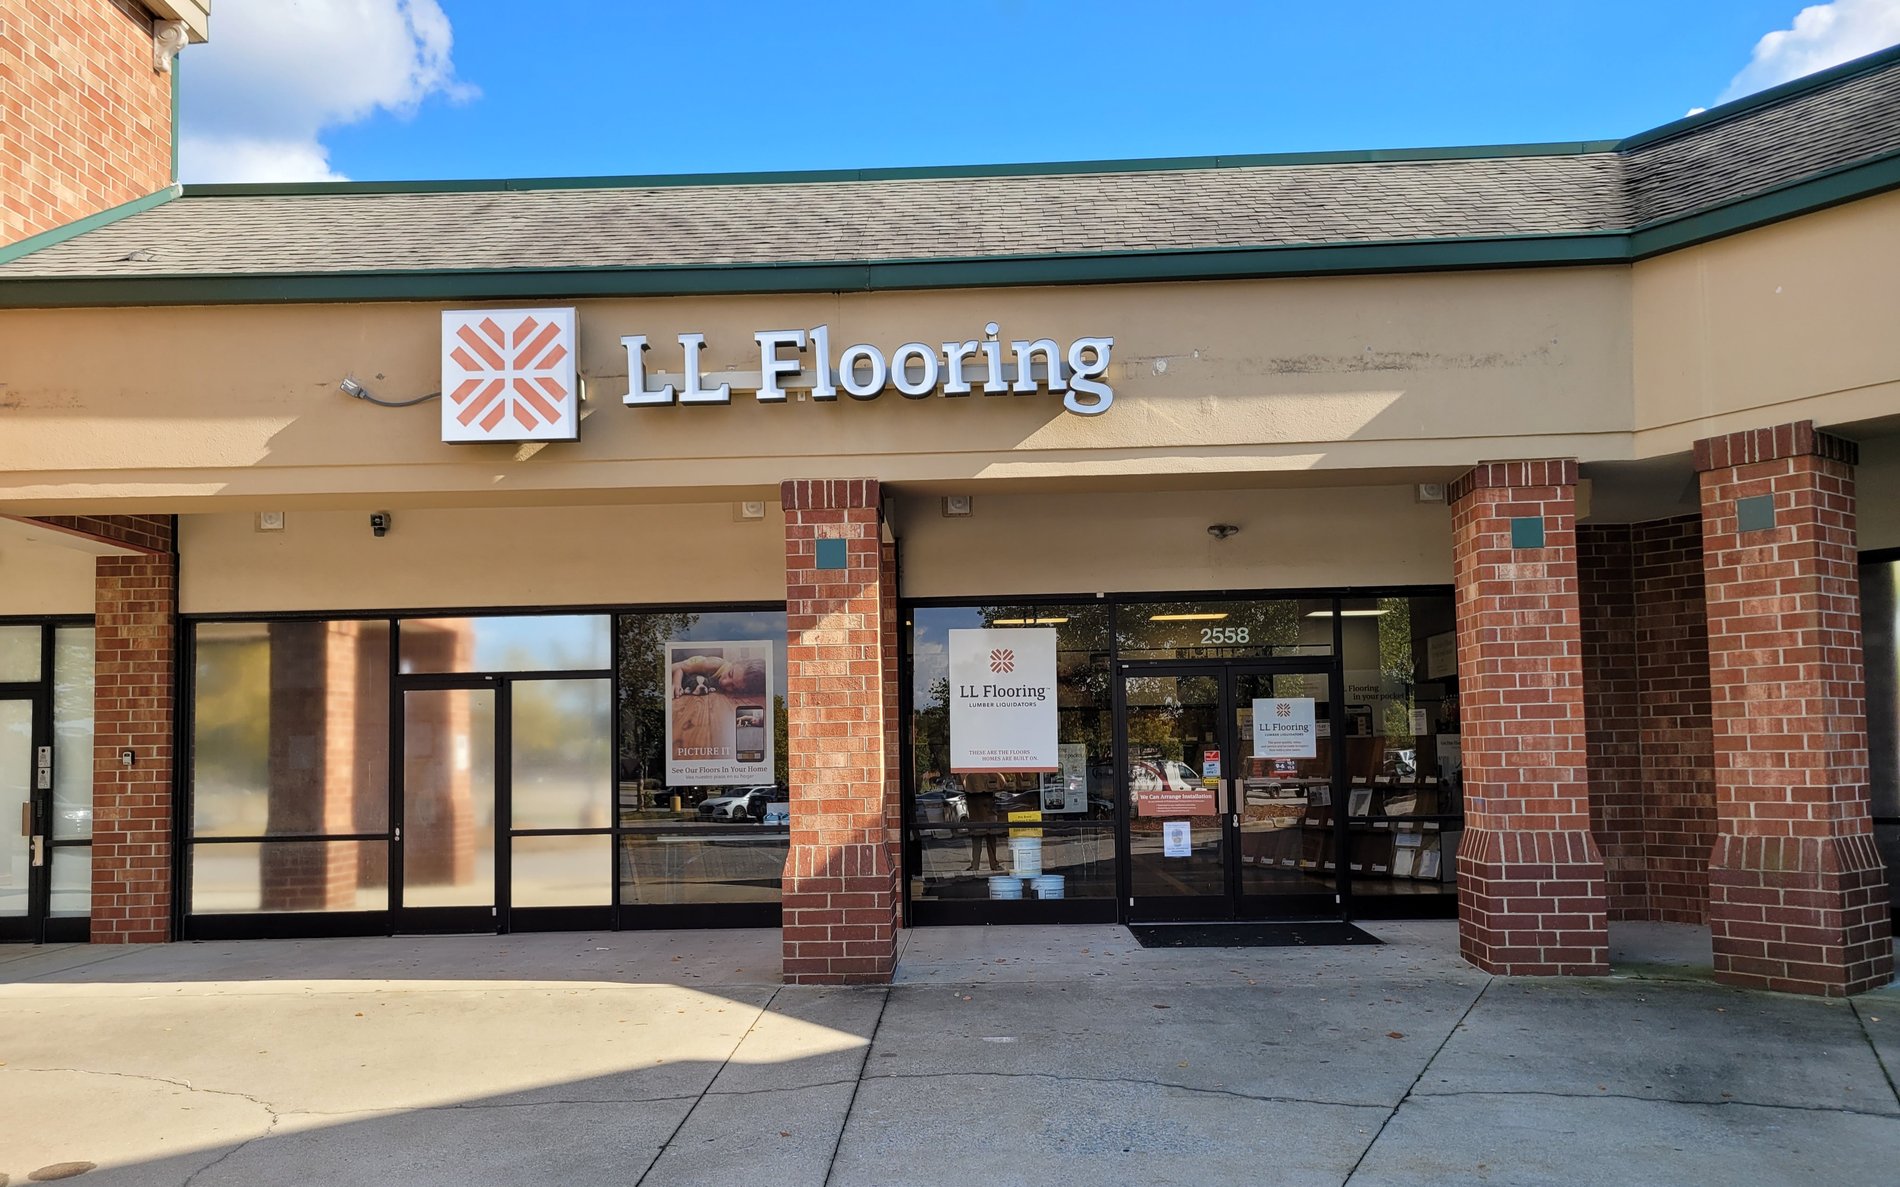 LL Flooring #1384 Garner | 2558 Timber Dr | Storefront